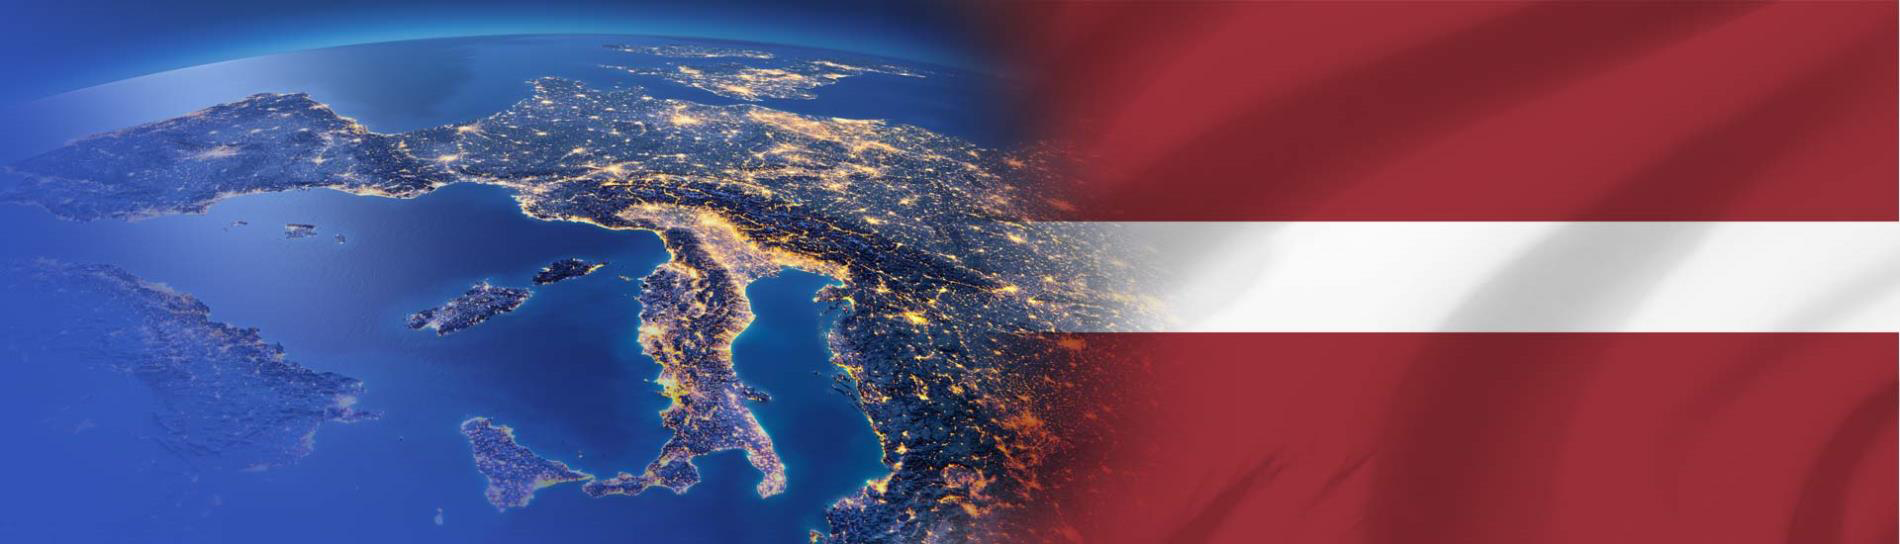 bandila ng Latvia sa kontinente ng Europa